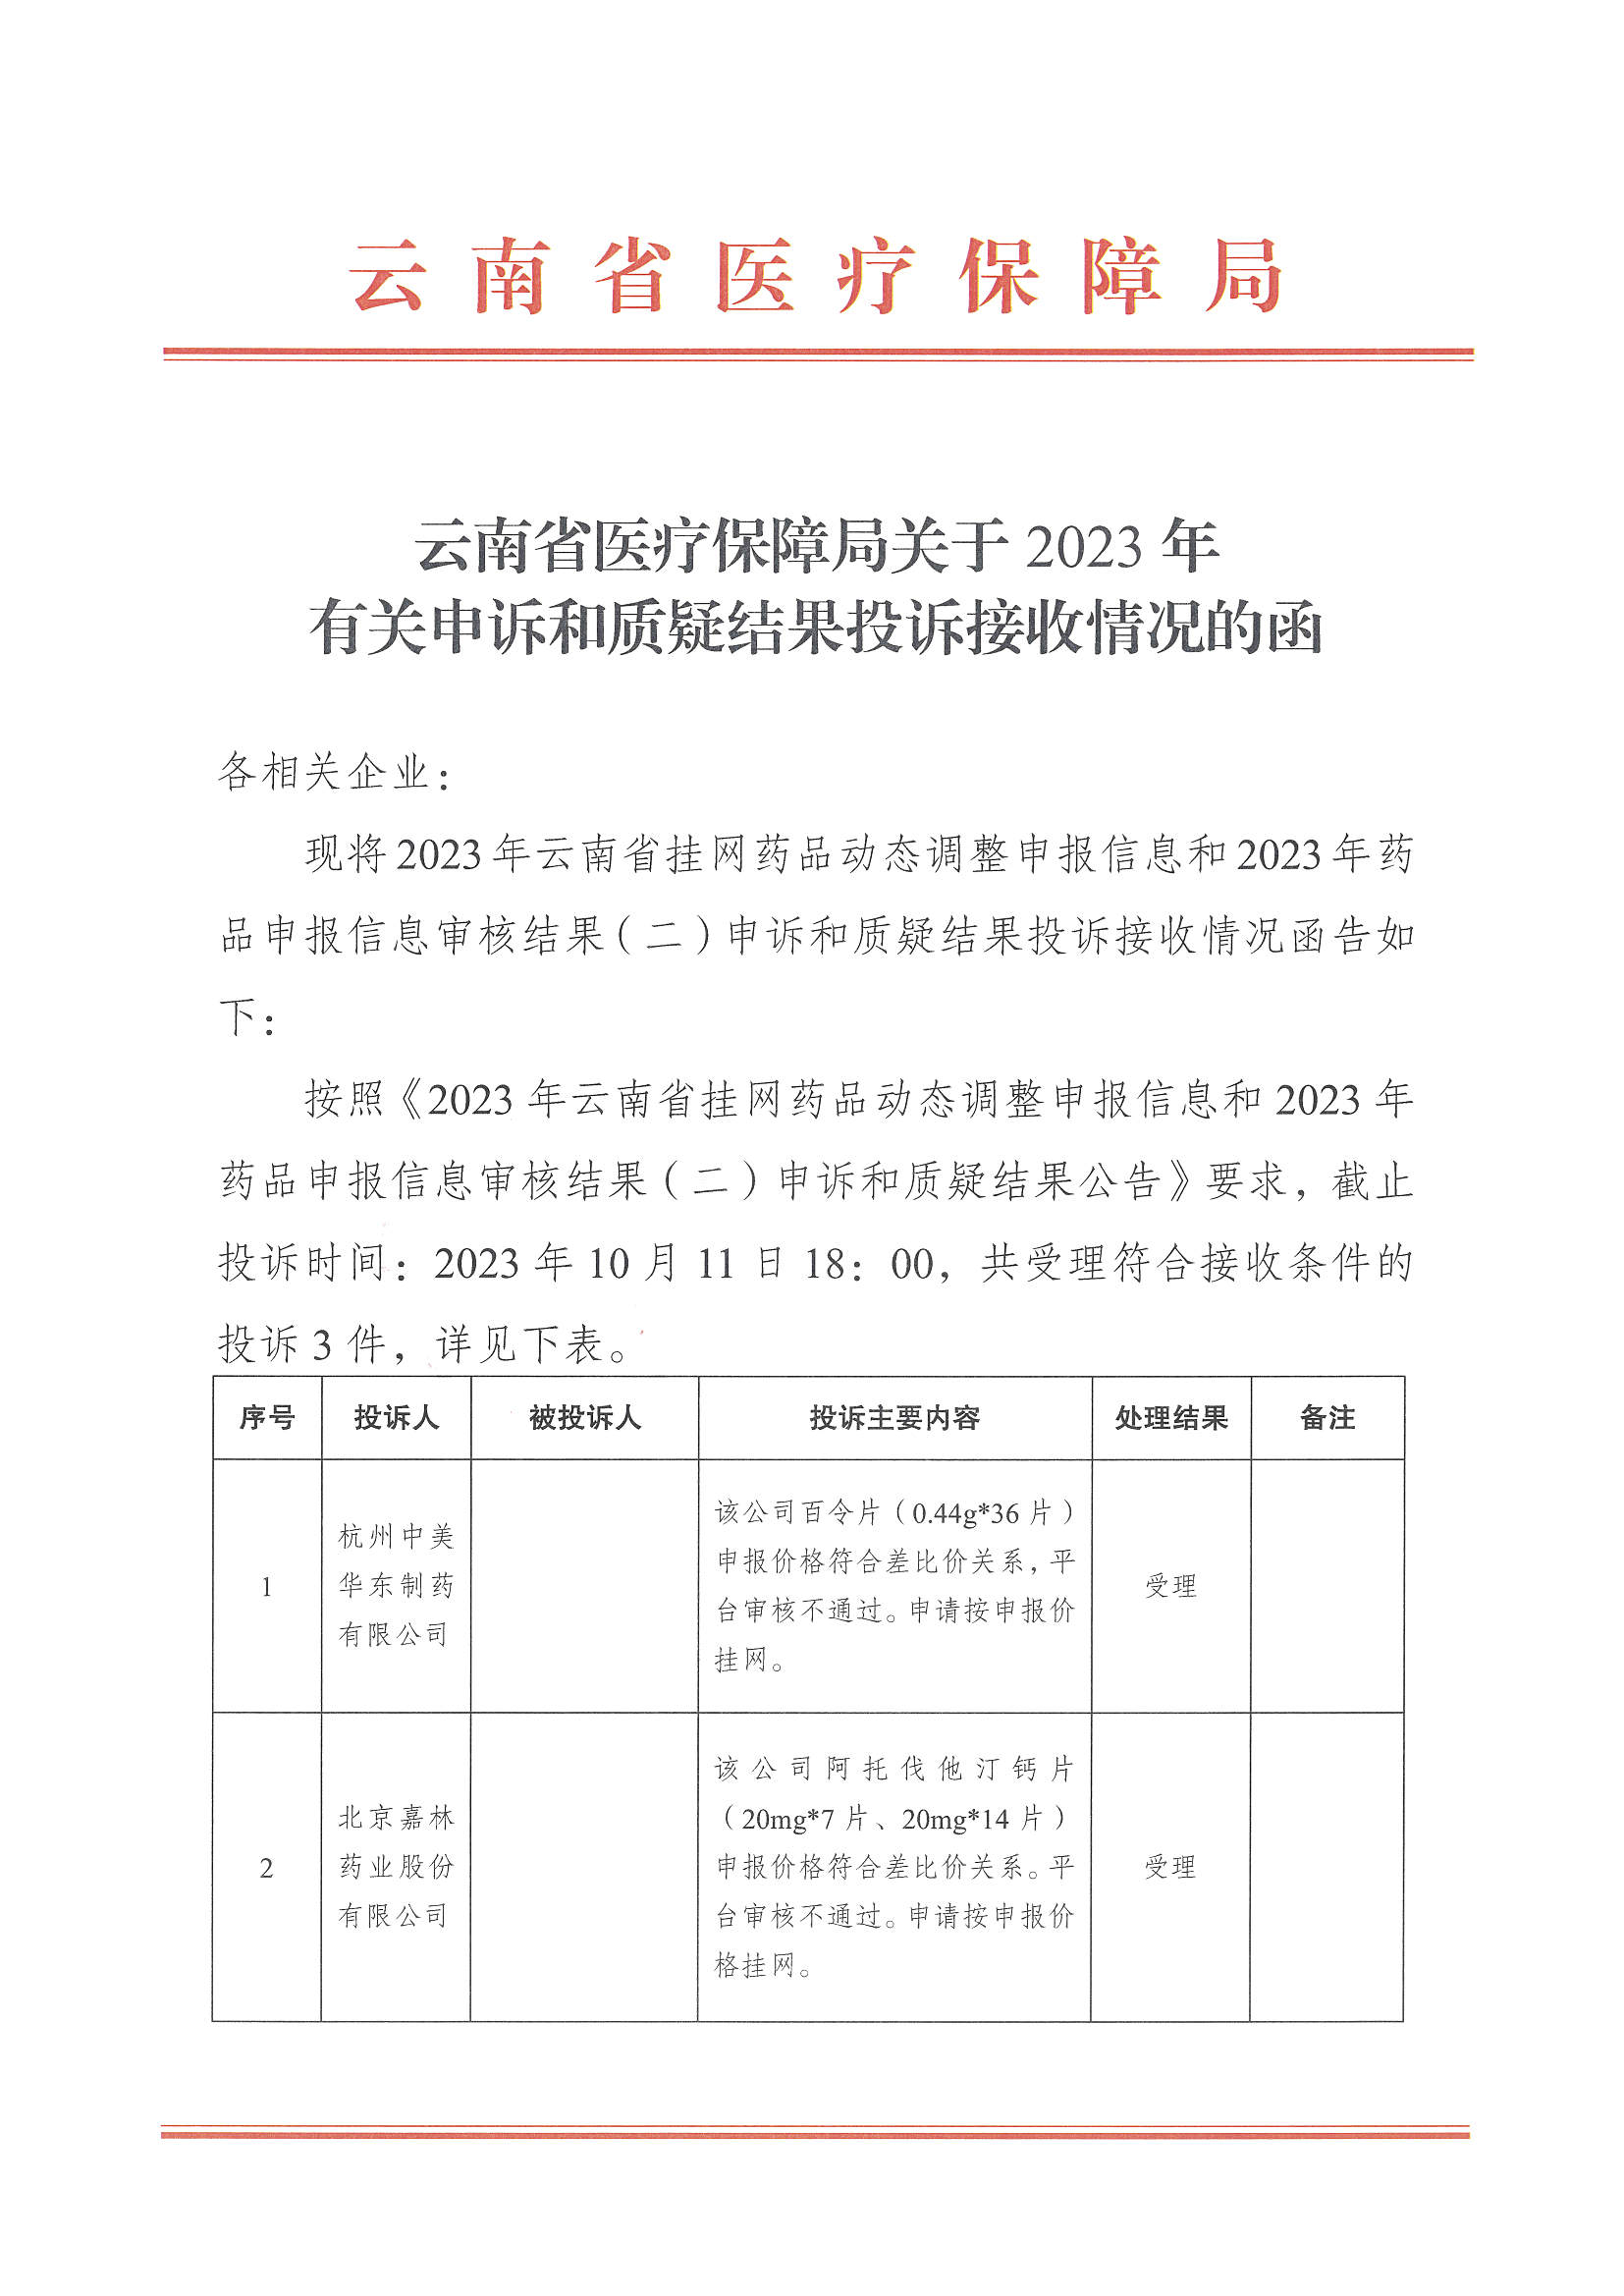 云南省医疗保障局关于2023年有关申诉和质疑结果投诉接收情况的函_页面_1.jpg